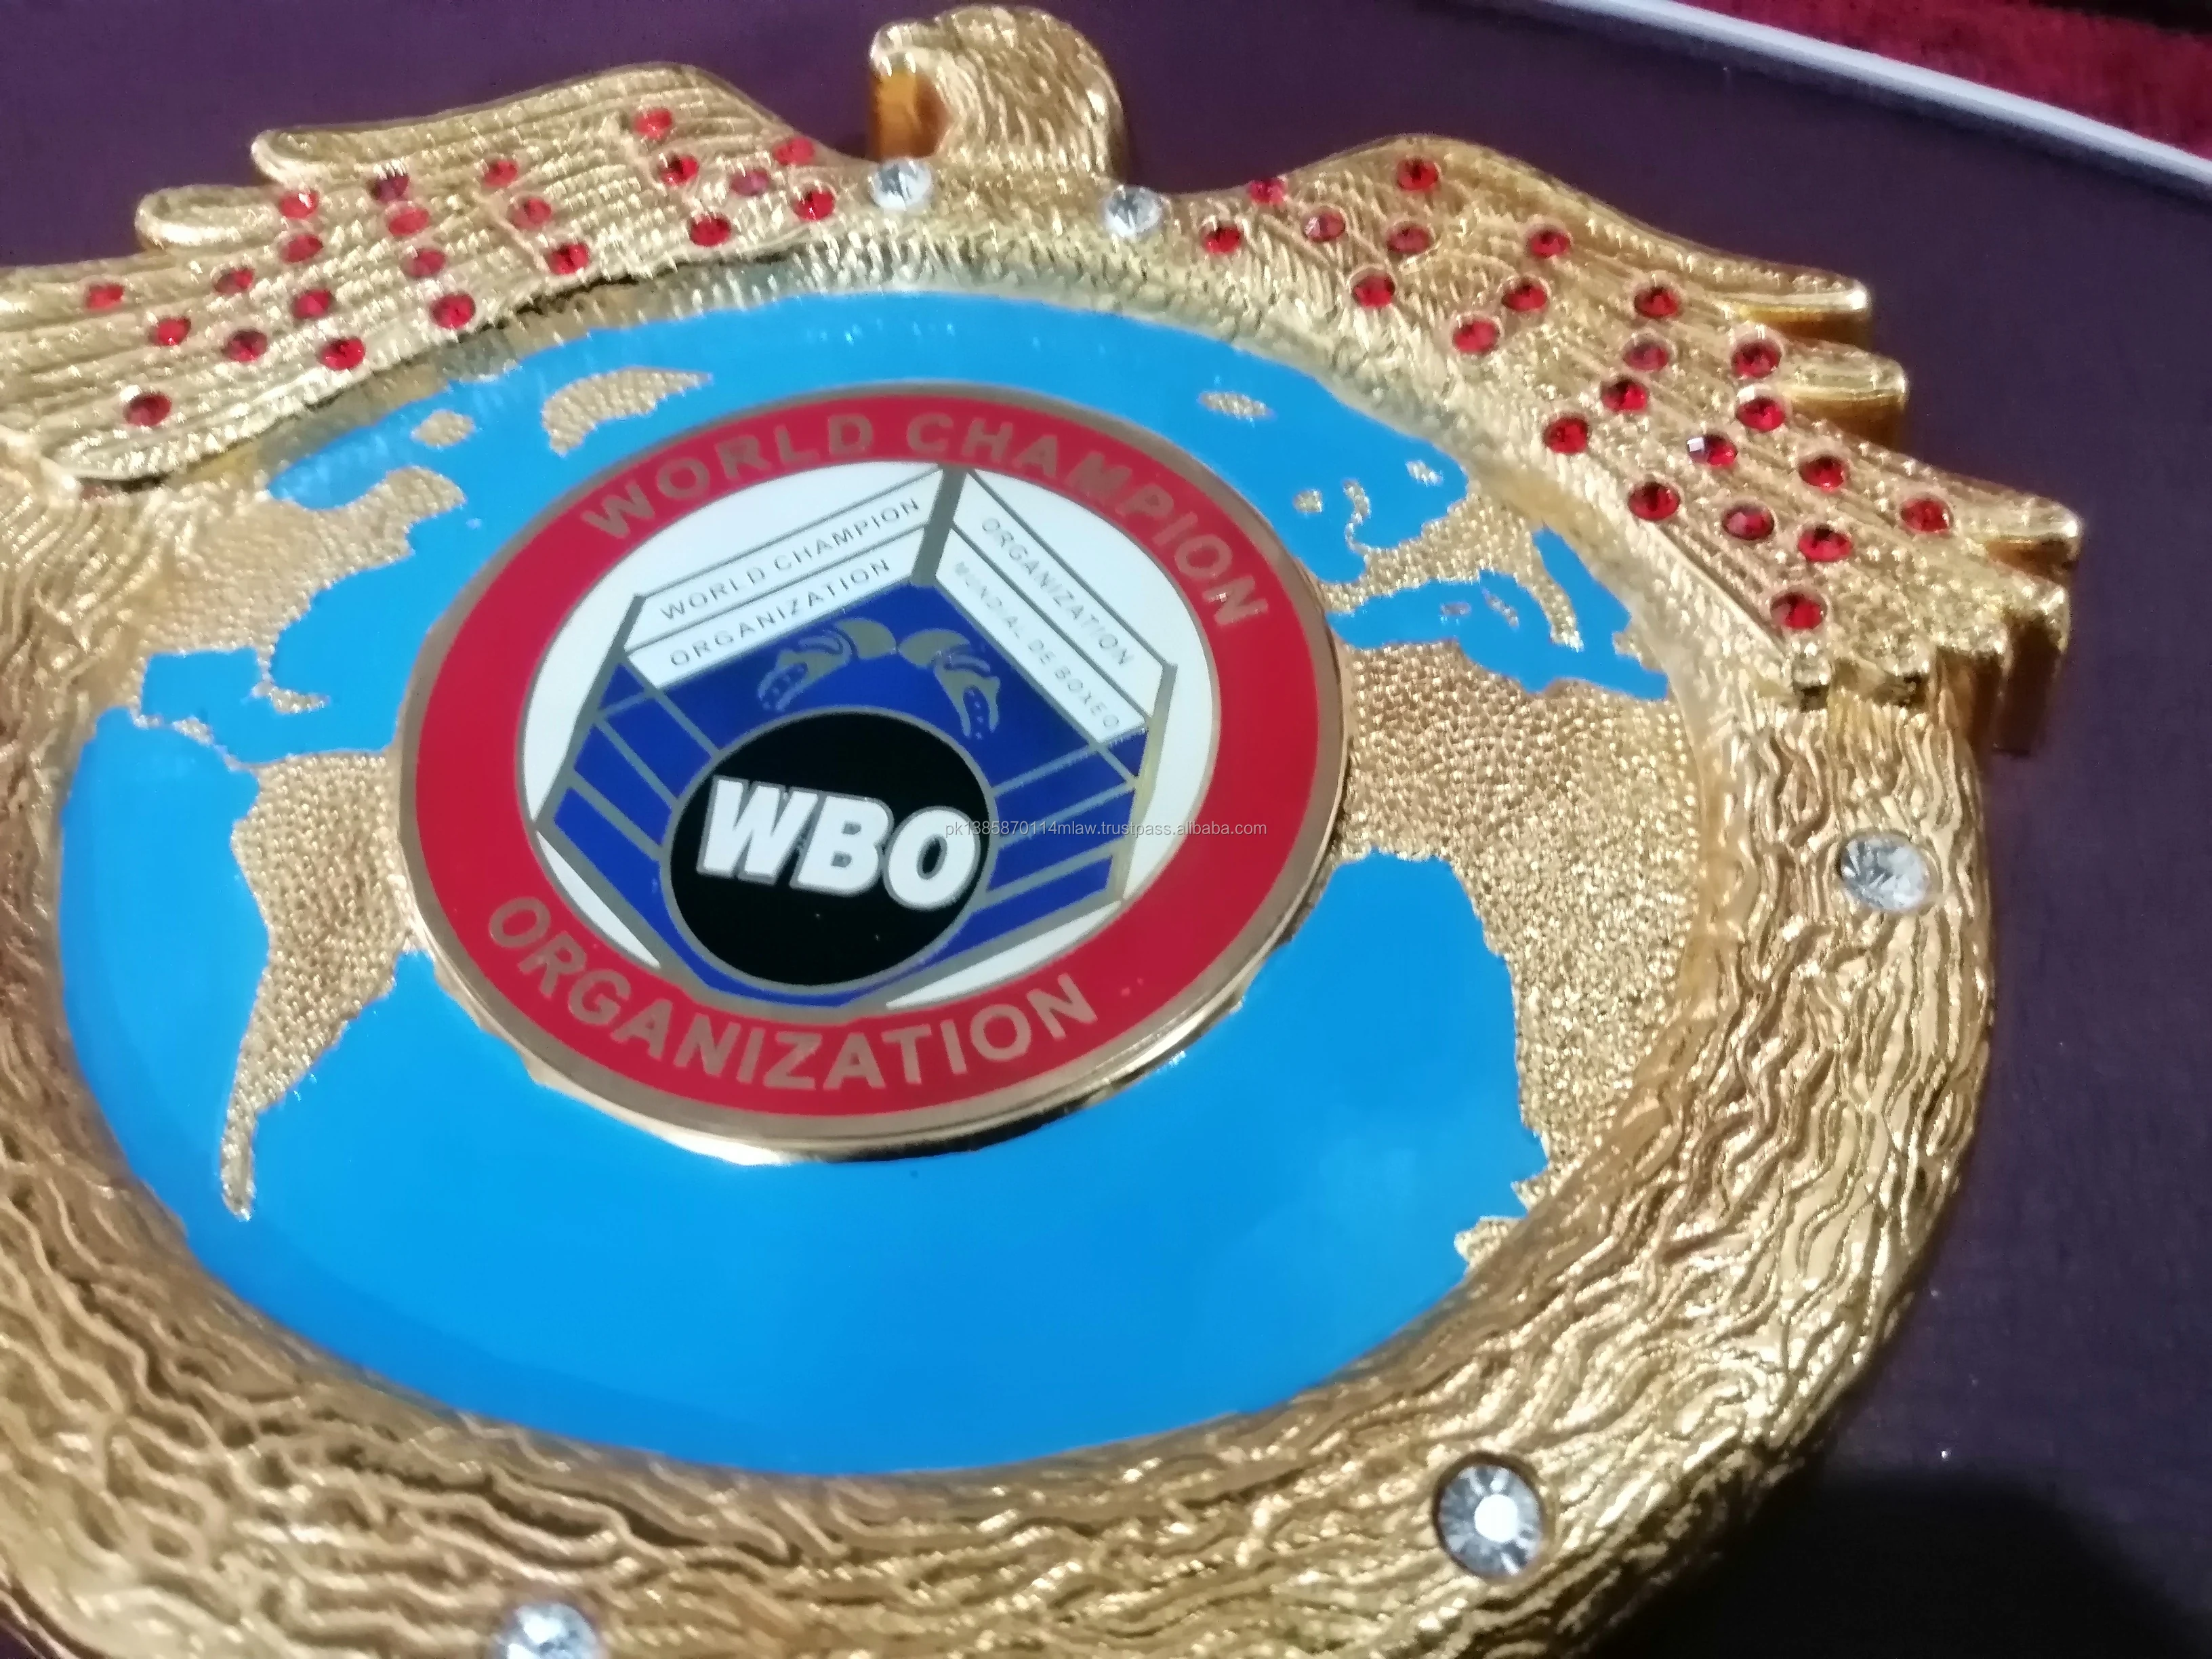 Details about   IBO INTERNATIONAL BOXING ORGANIZATION BELT WBO MMA IBF WBC TITLE ADULT SIZE BELT 